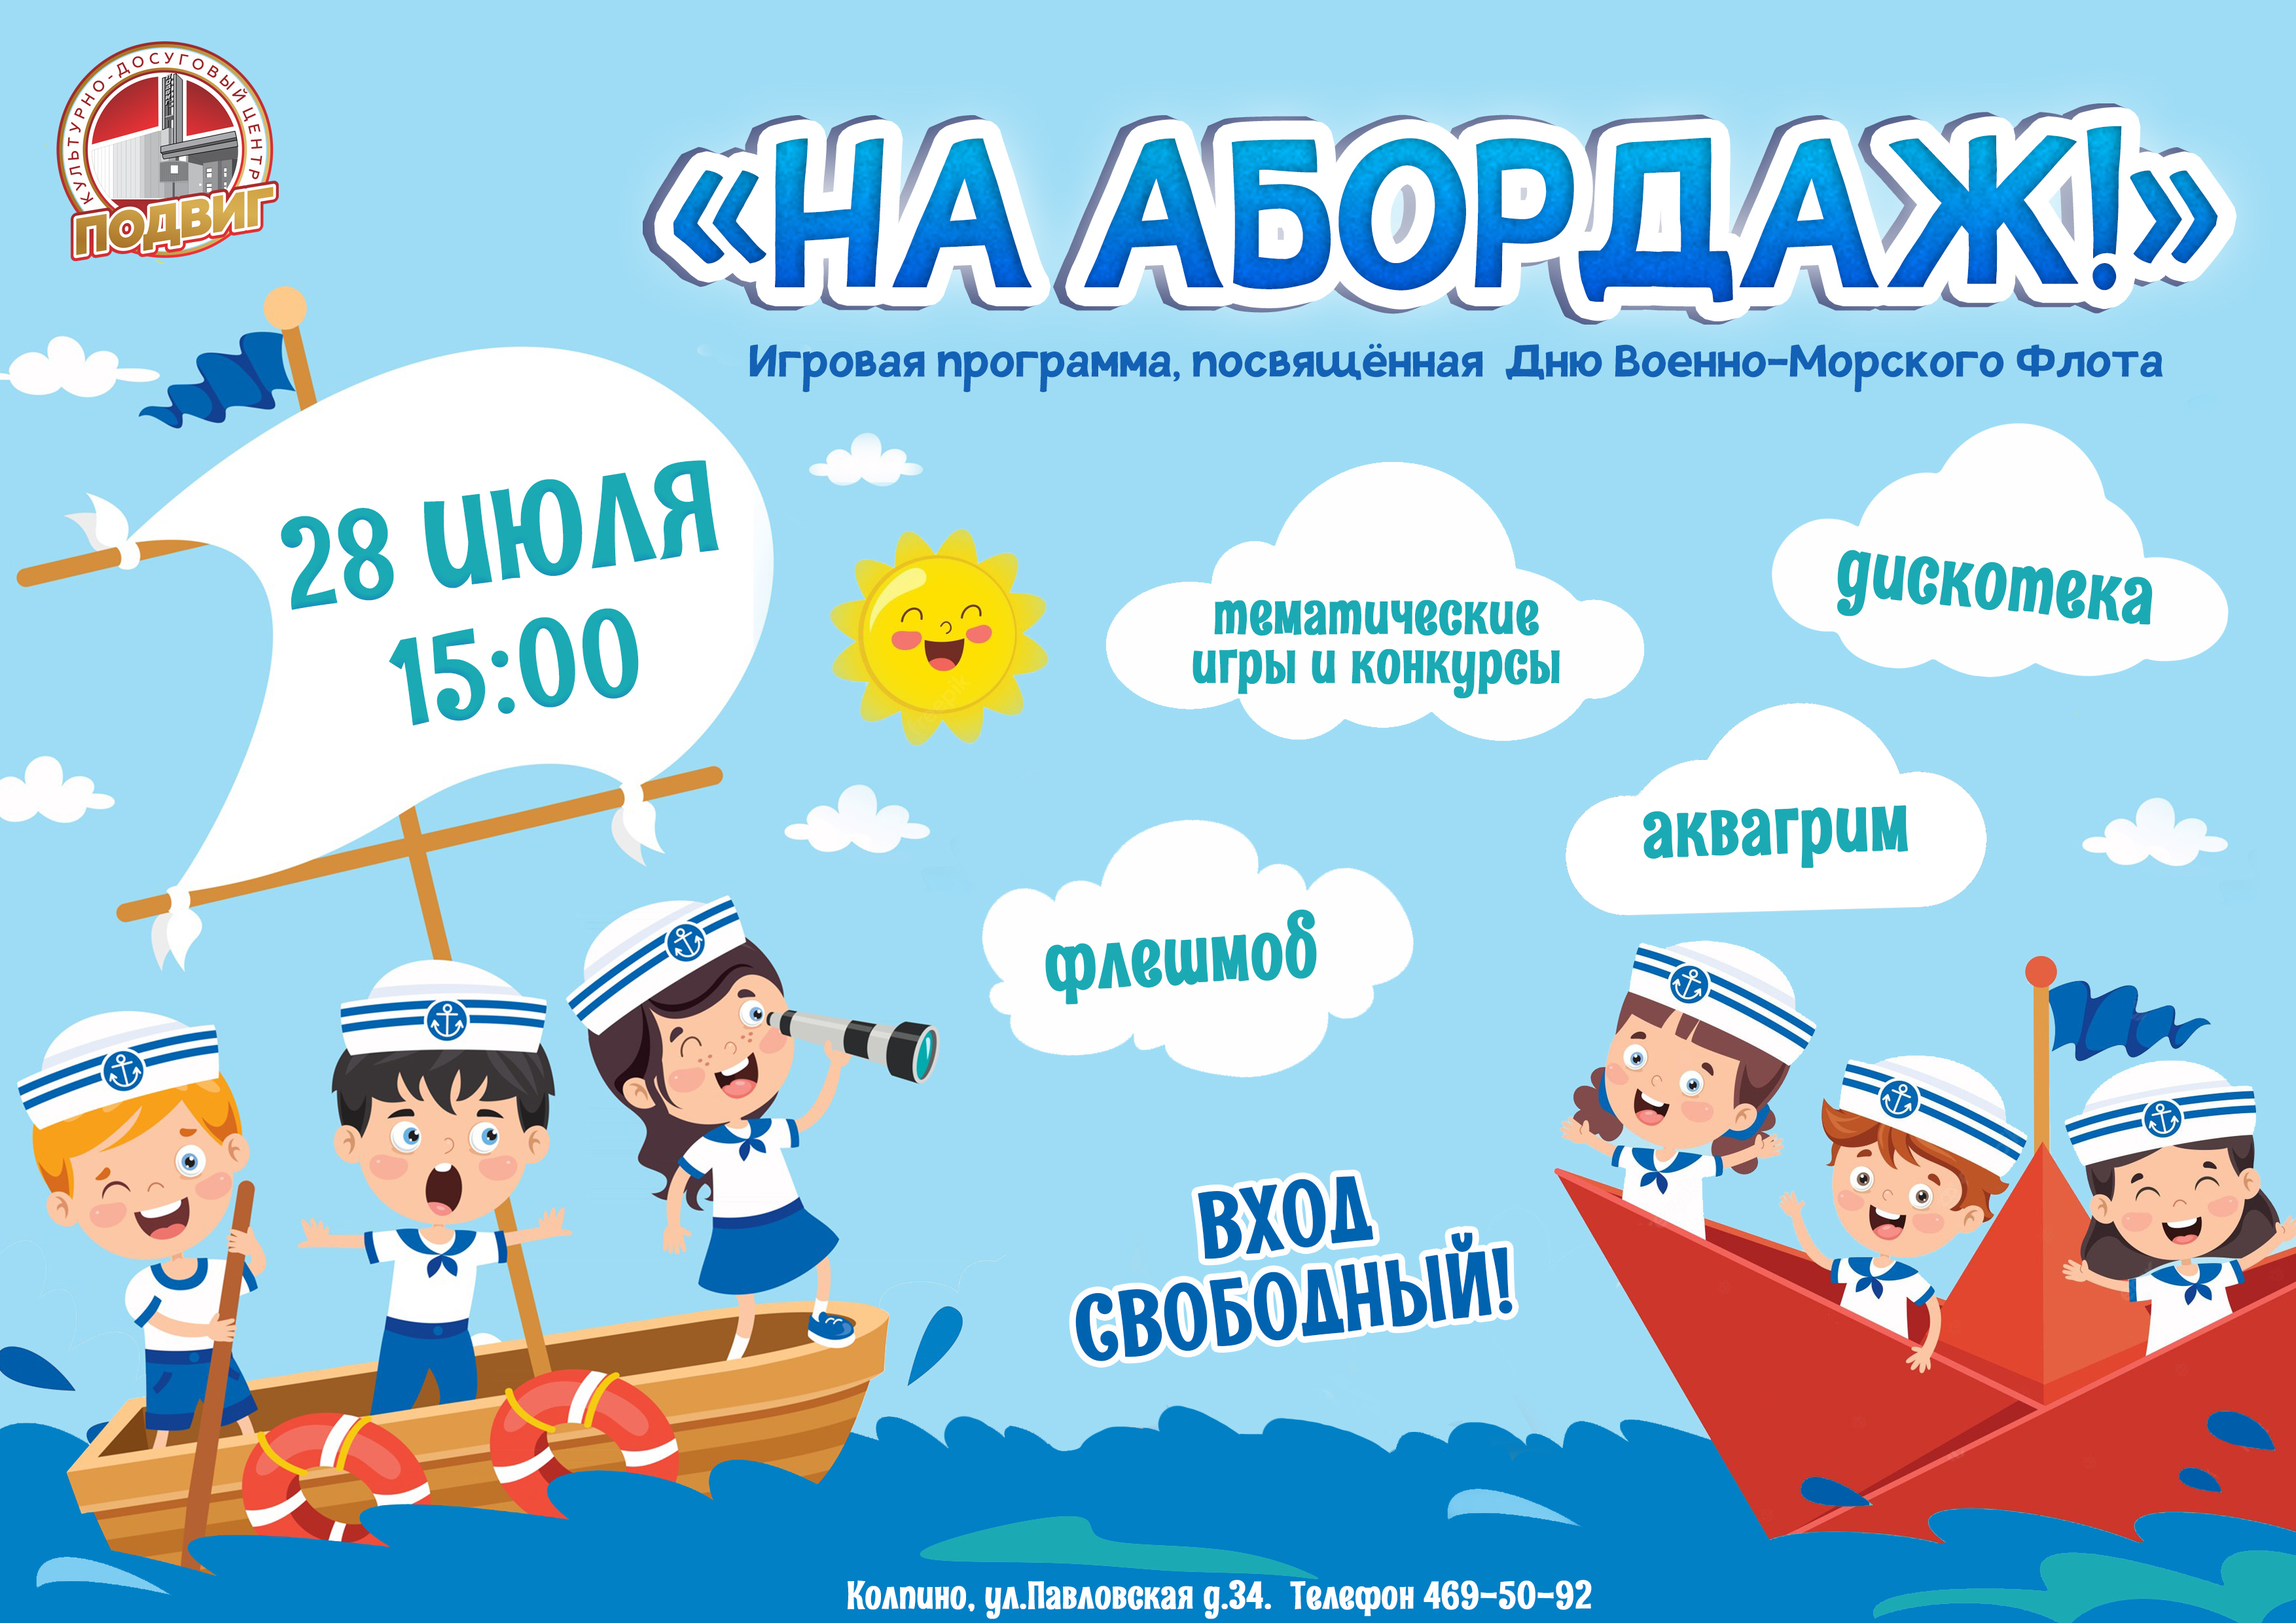 28 июля на уличной площадке перед КДЦ "Подвиг" пройдёт праздничная игровая программа "На абордаж!", посвящённая Дню Военно-Морского Флота России.